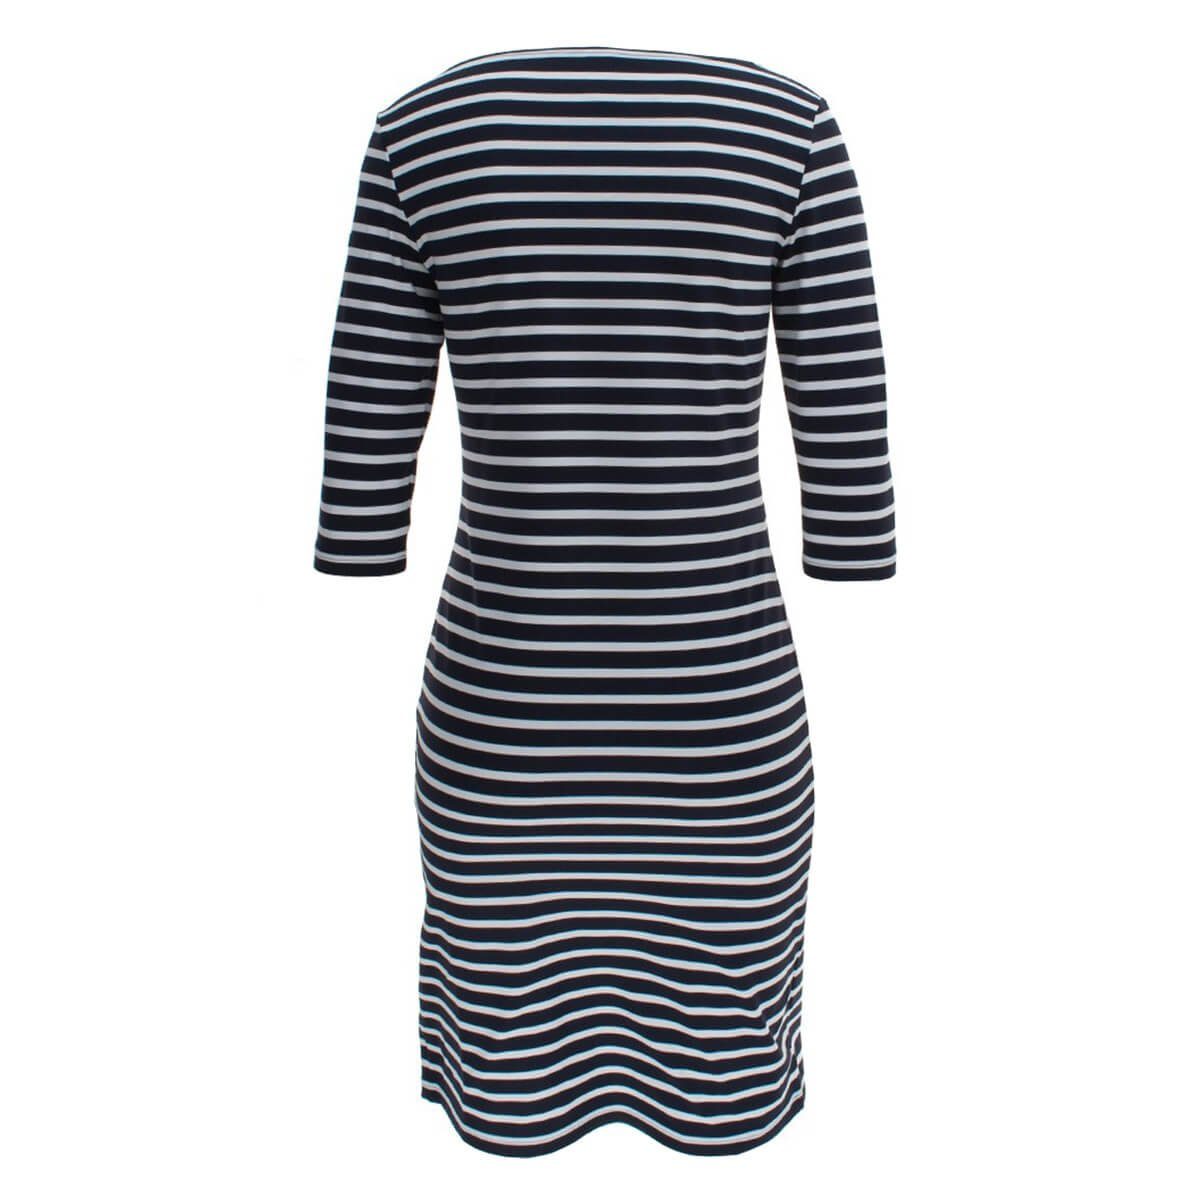 Saint III 0742 Shirtkleid mit James Damen Propriano Sommershirtkleid Kleid Streifen Streifenkleid Blau-Weiß(6T)